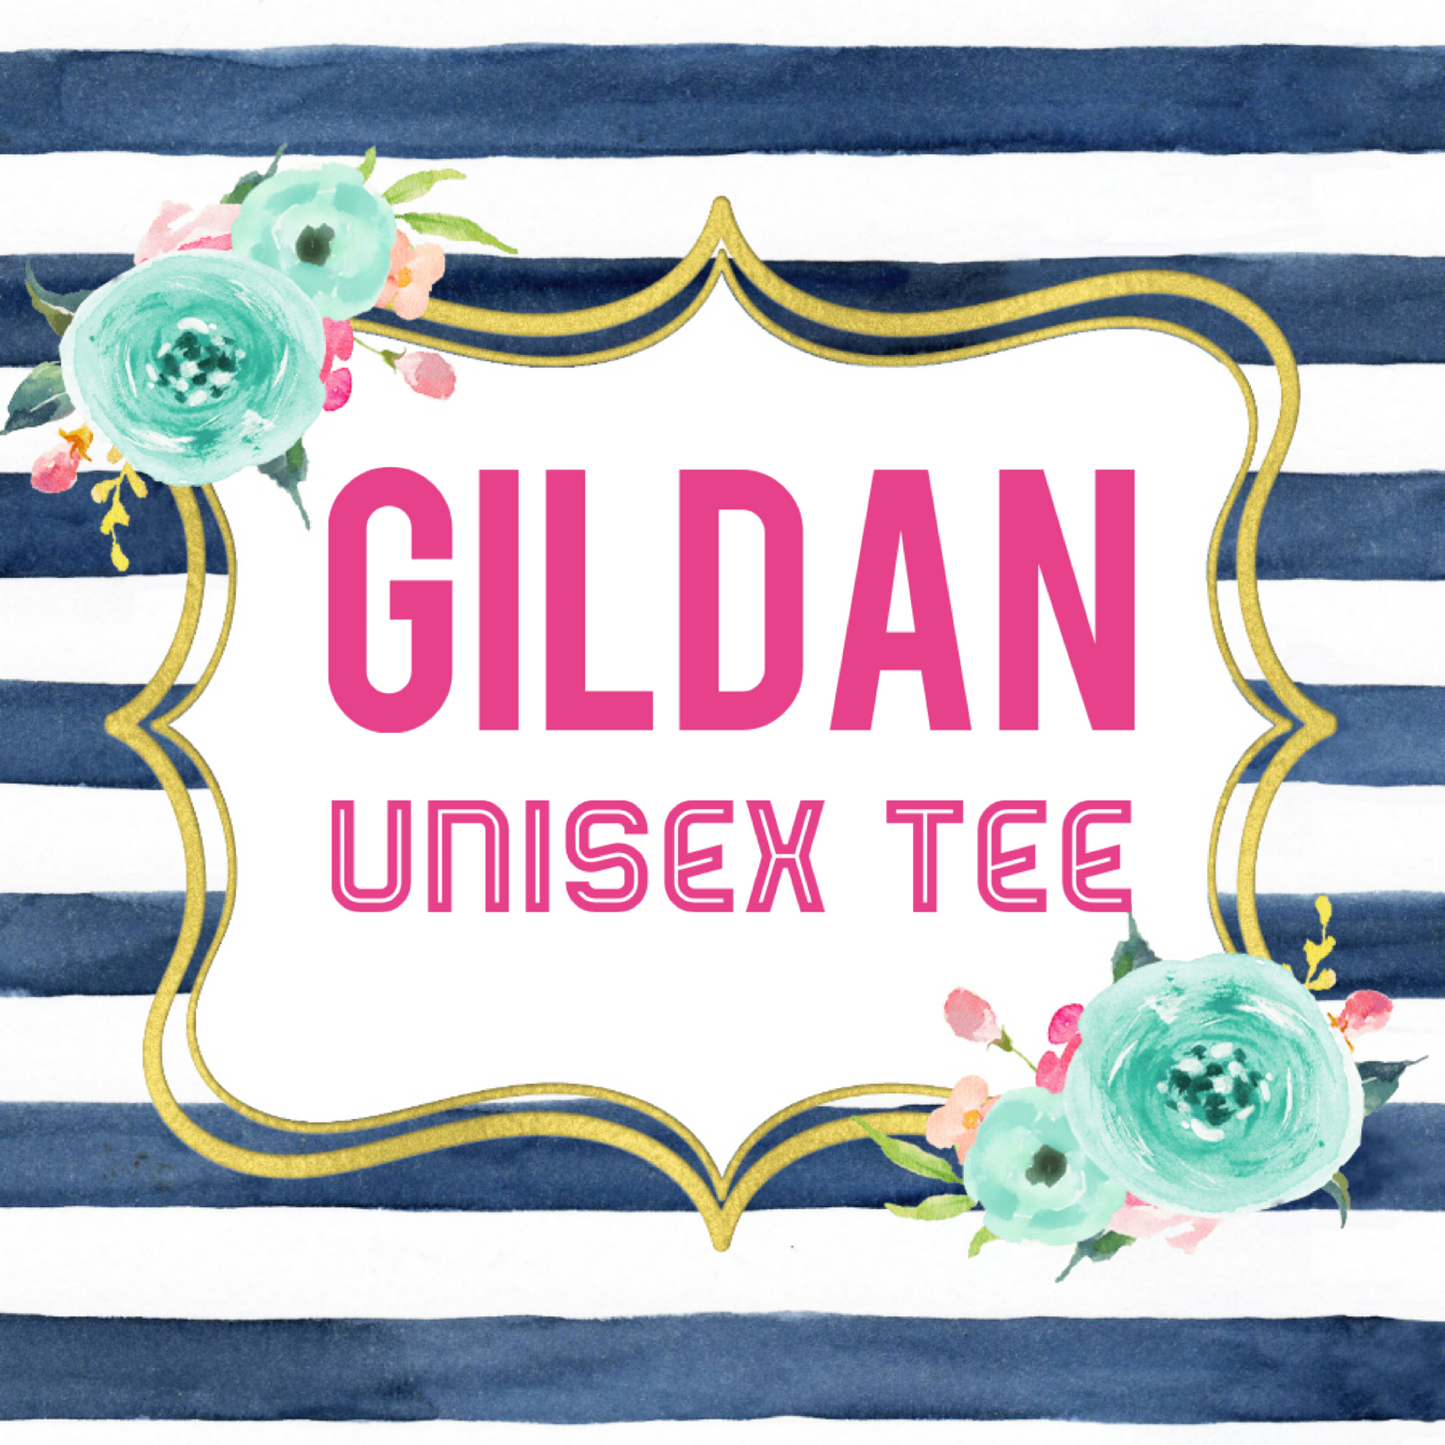 Gildan Unisex Tee